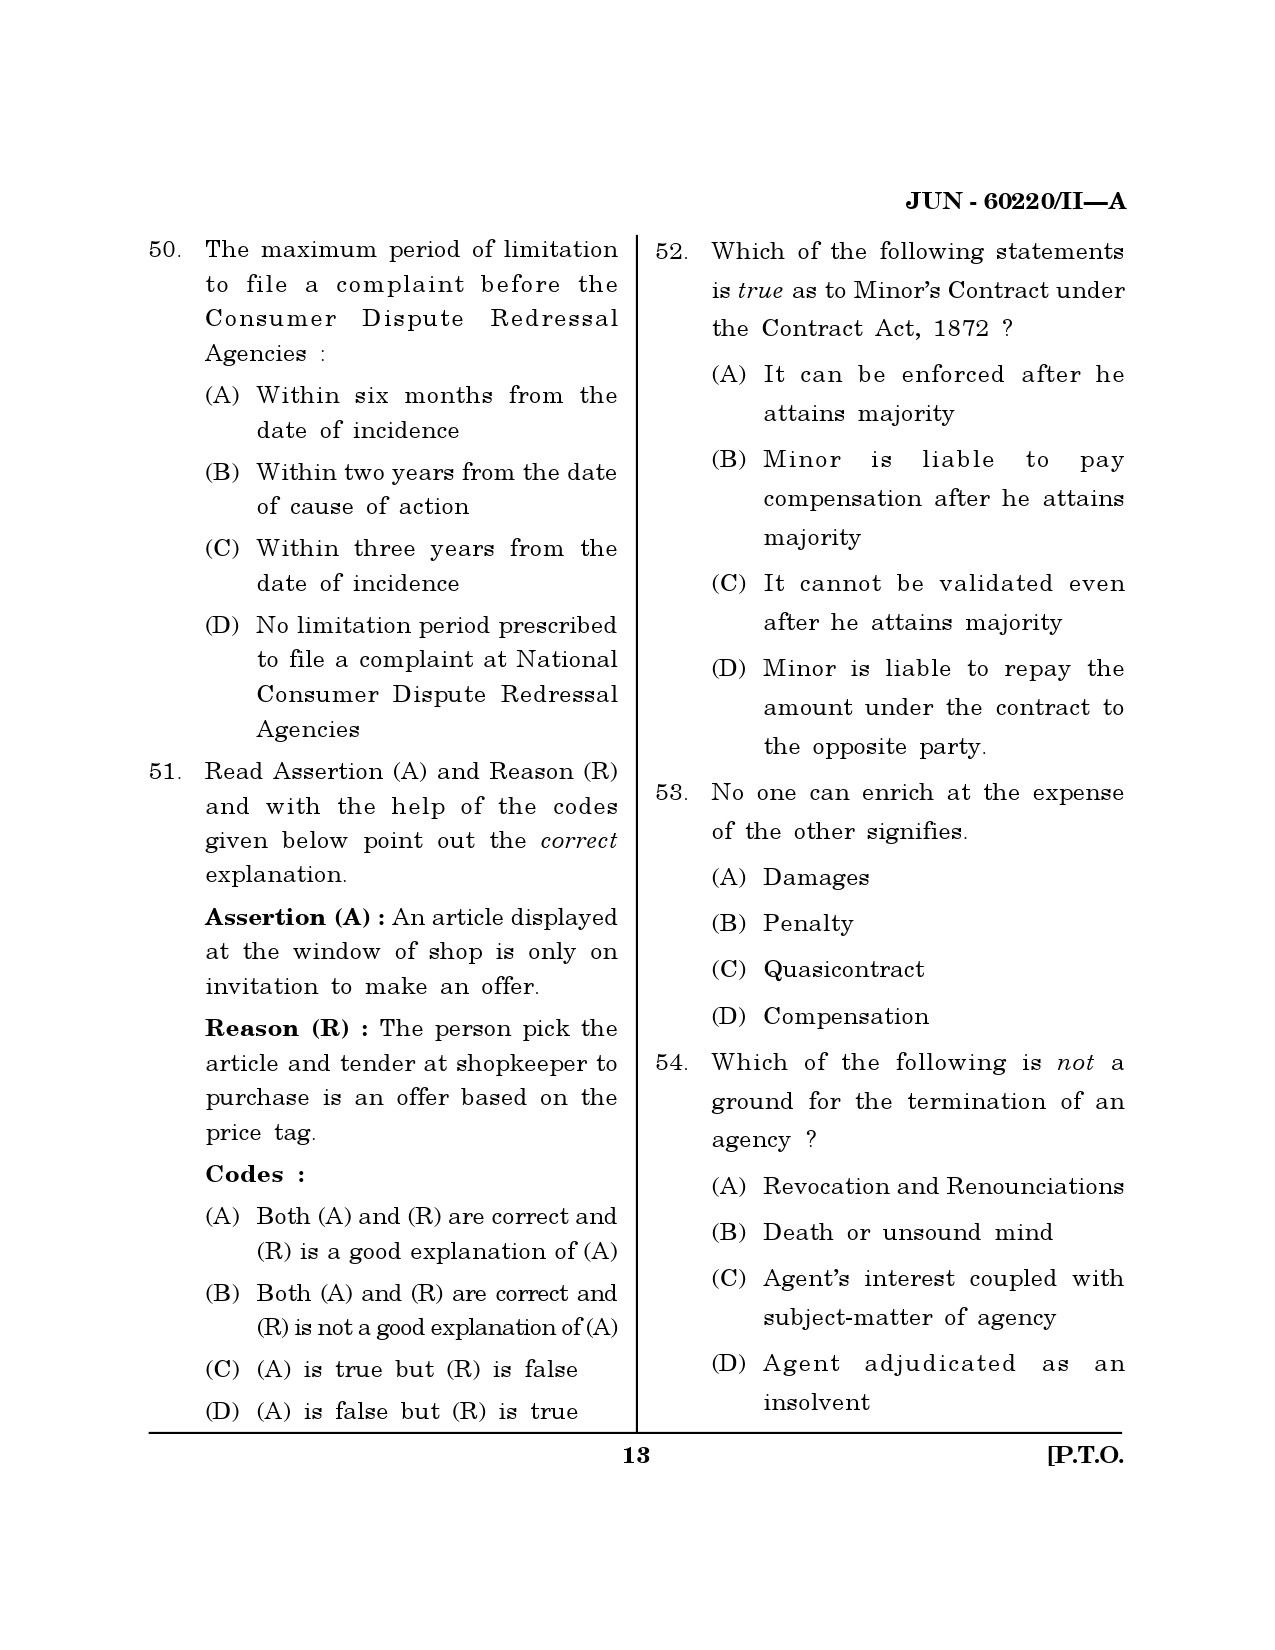 Maharashtra SET Law Question Paper II June 2020 12